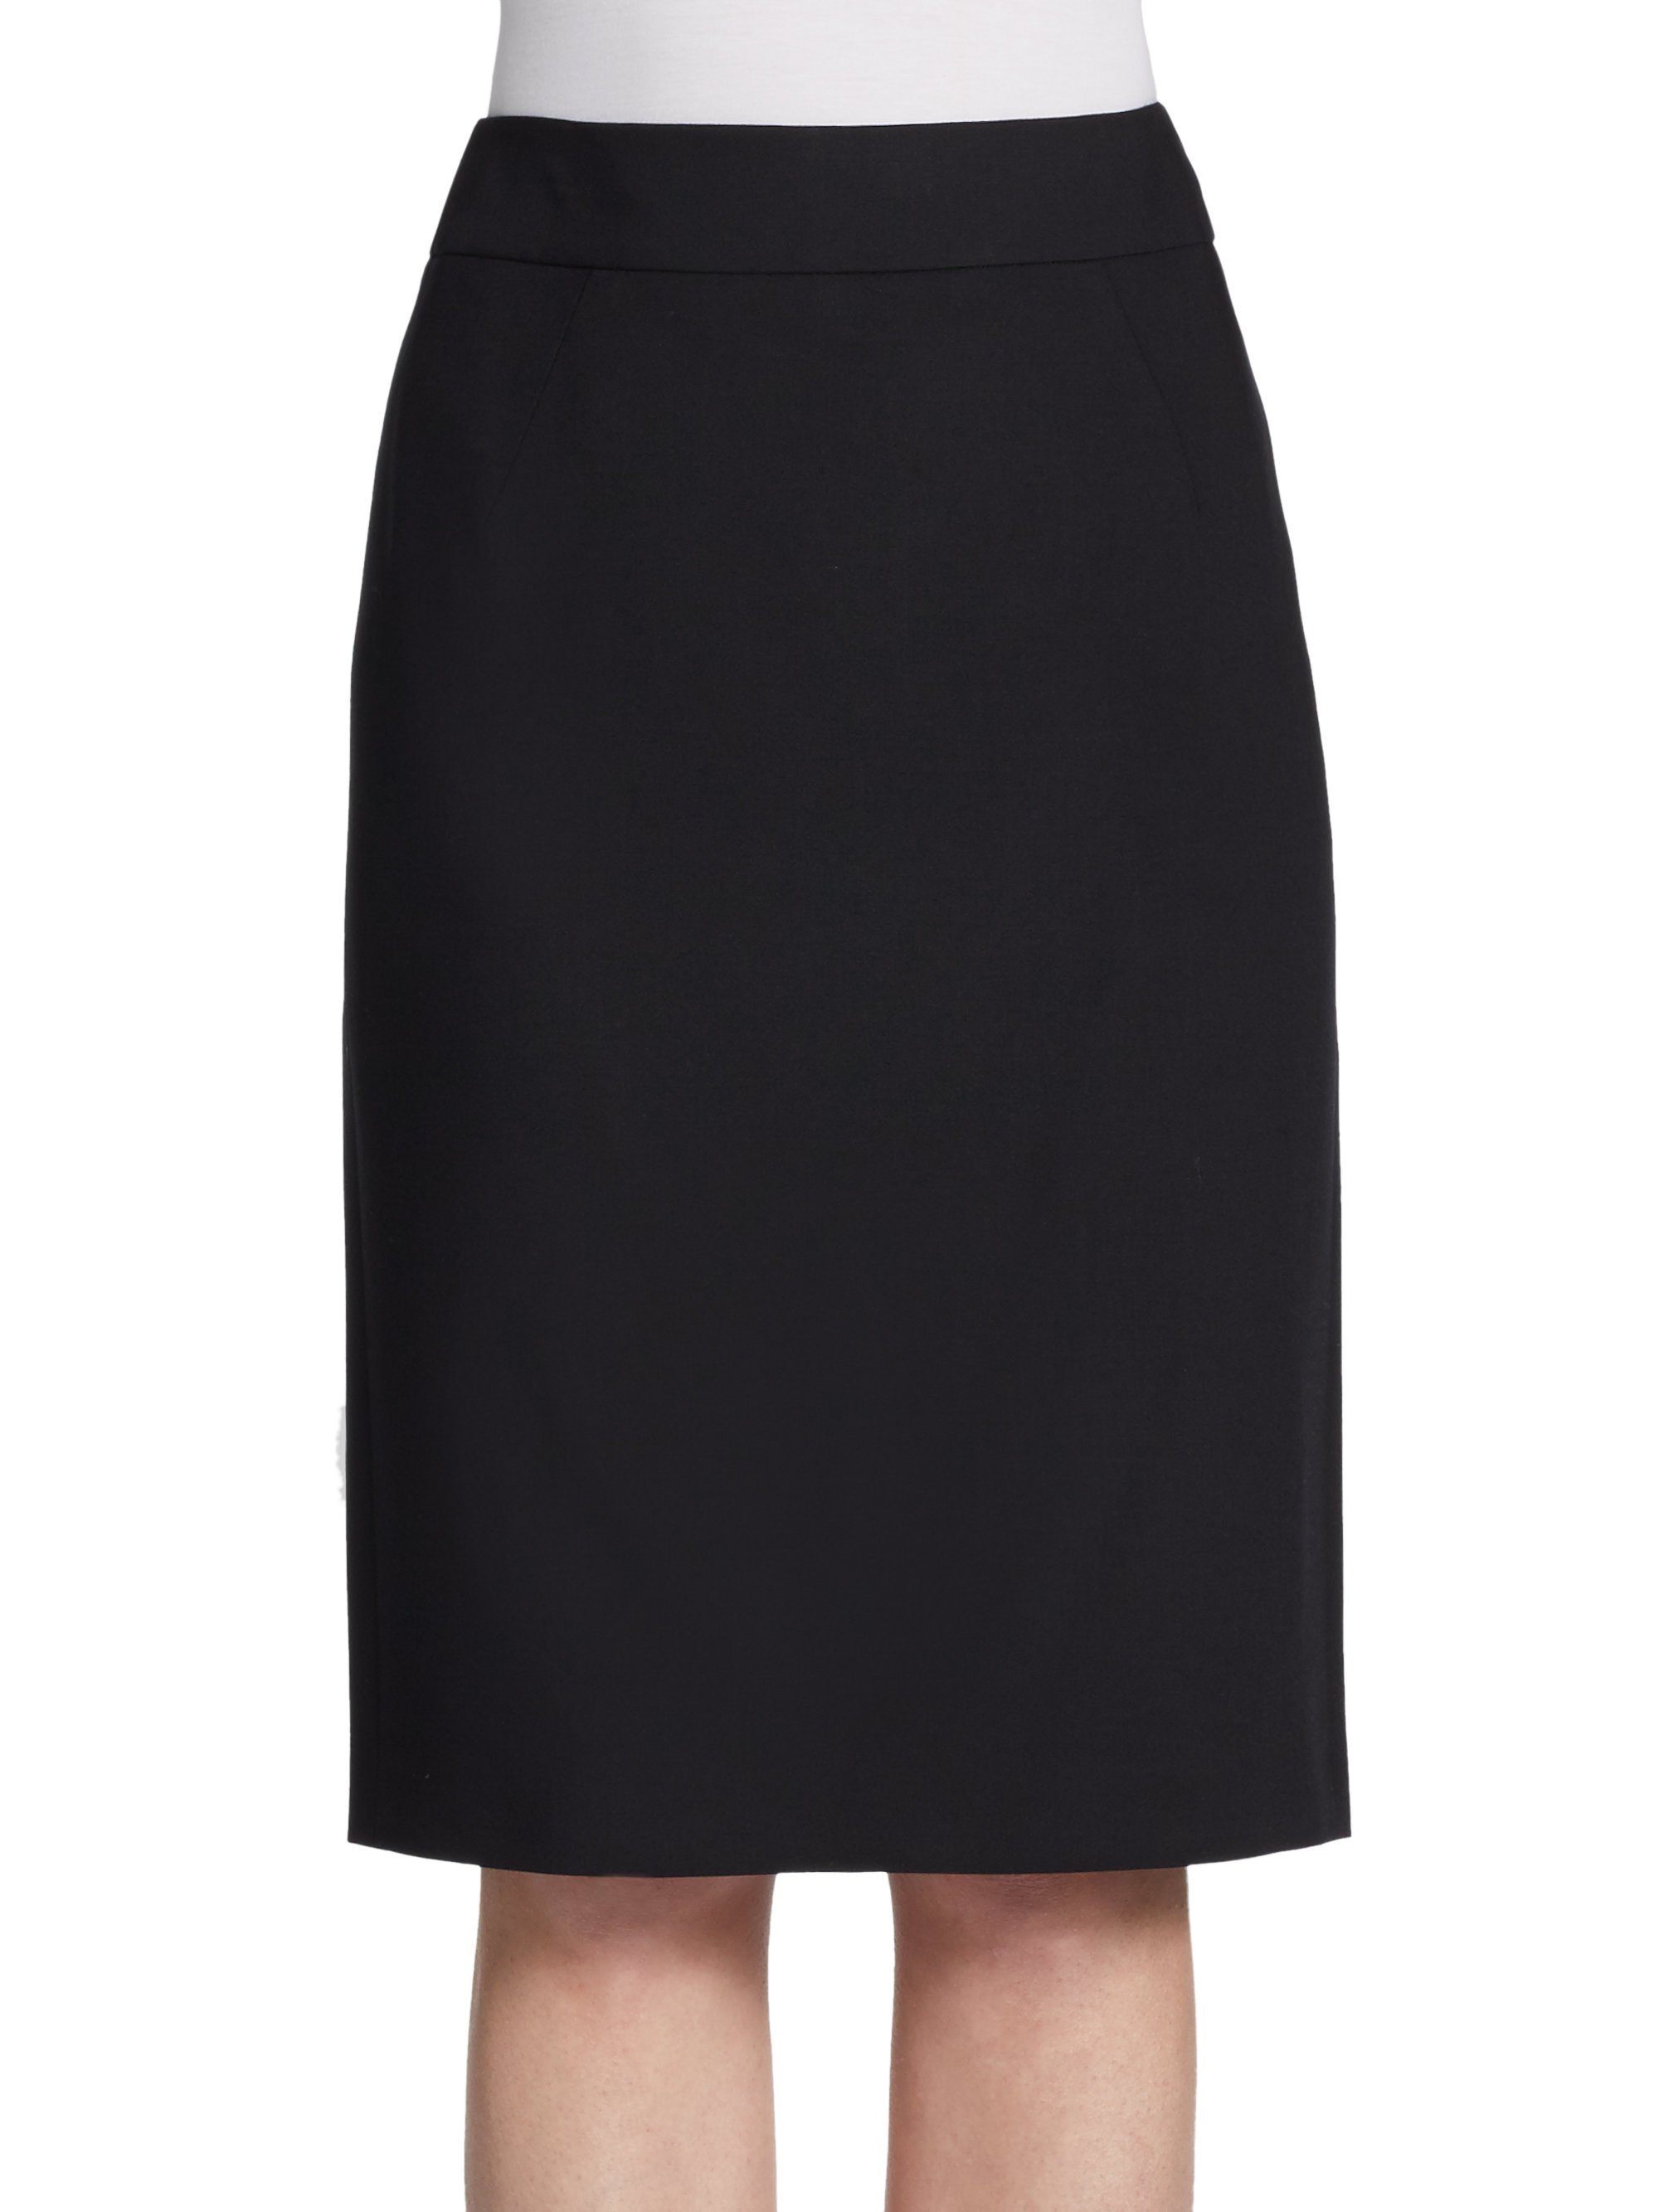 Giorgio armani Pencil Skirt in Black | Lyst